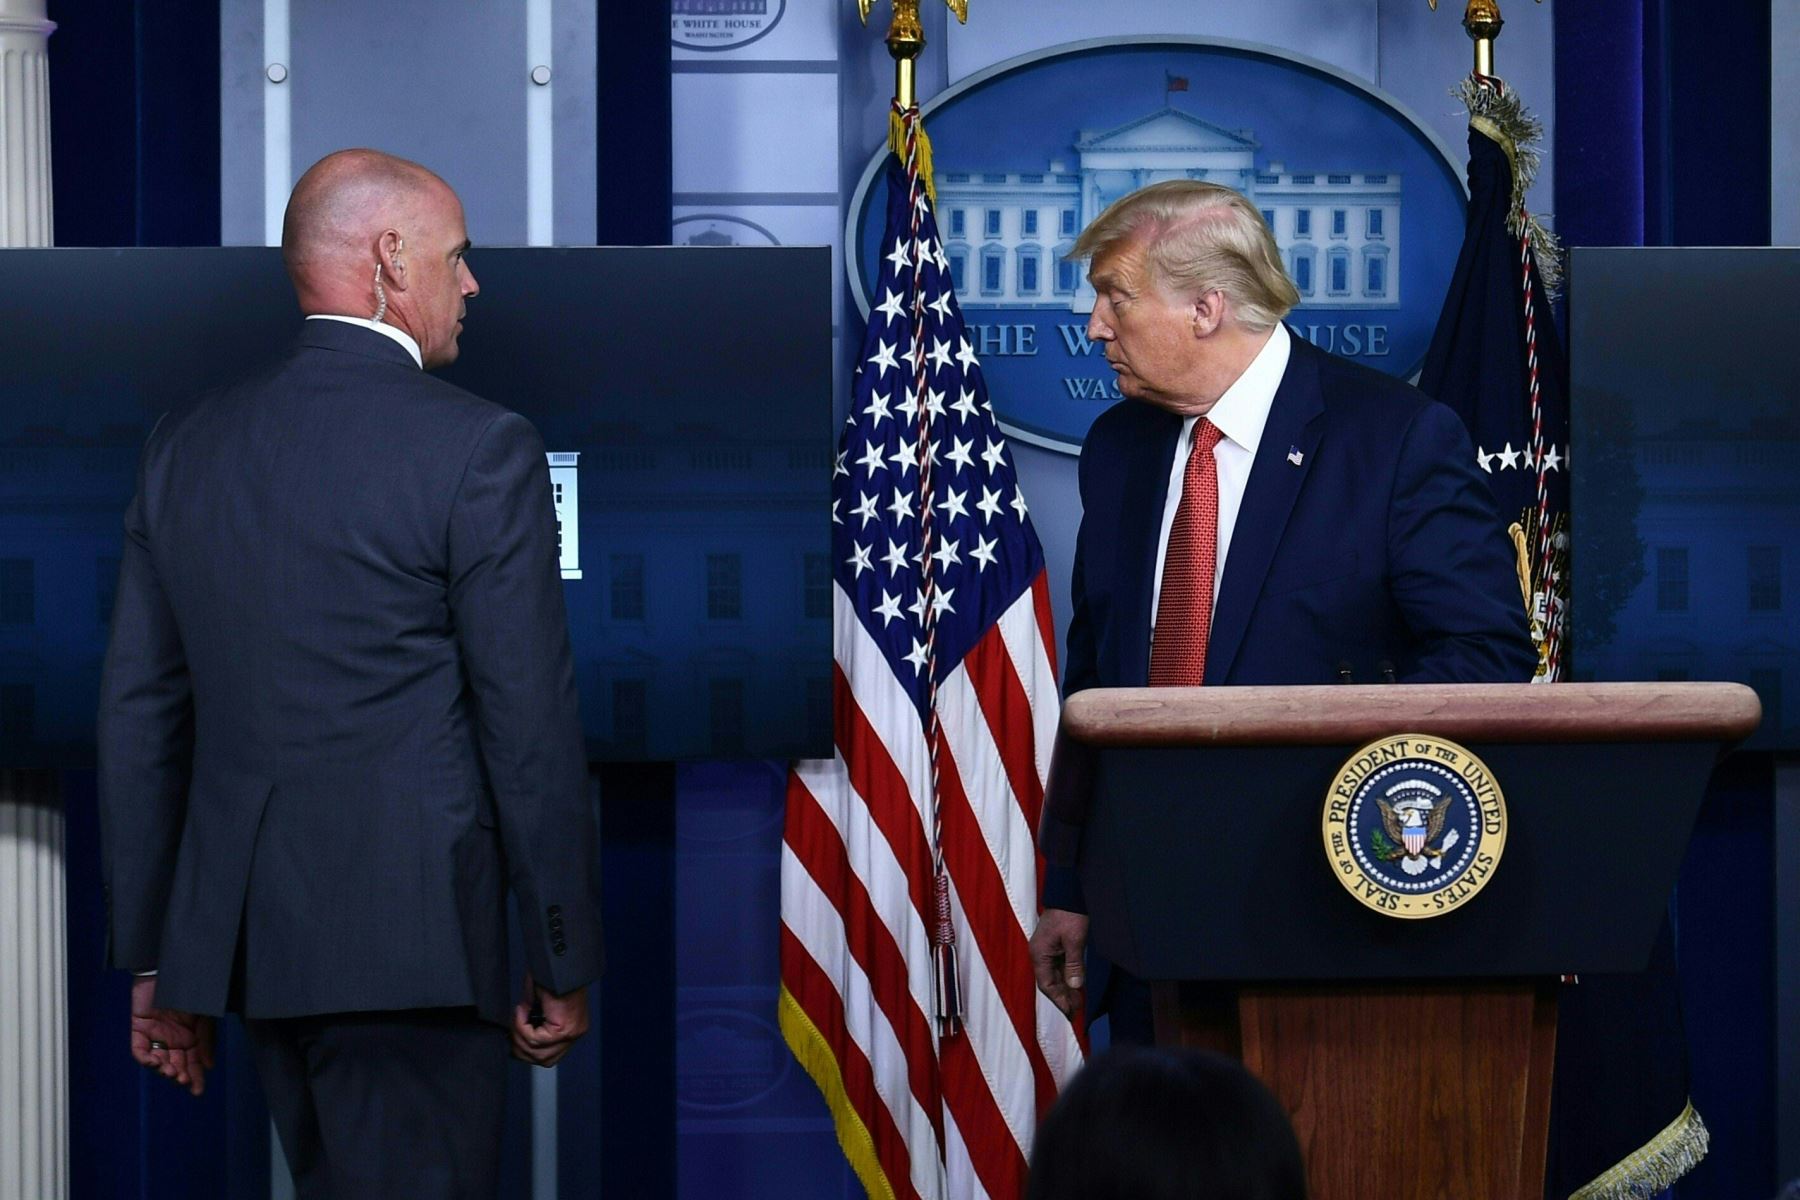 El presidente de los Estados Unidos, Donald Trump, está siendo resguardado por un miembro del servicio secreto de la Sala Brady Briefing de la Casa Blanca en Washington, DC.
Foto: AFP